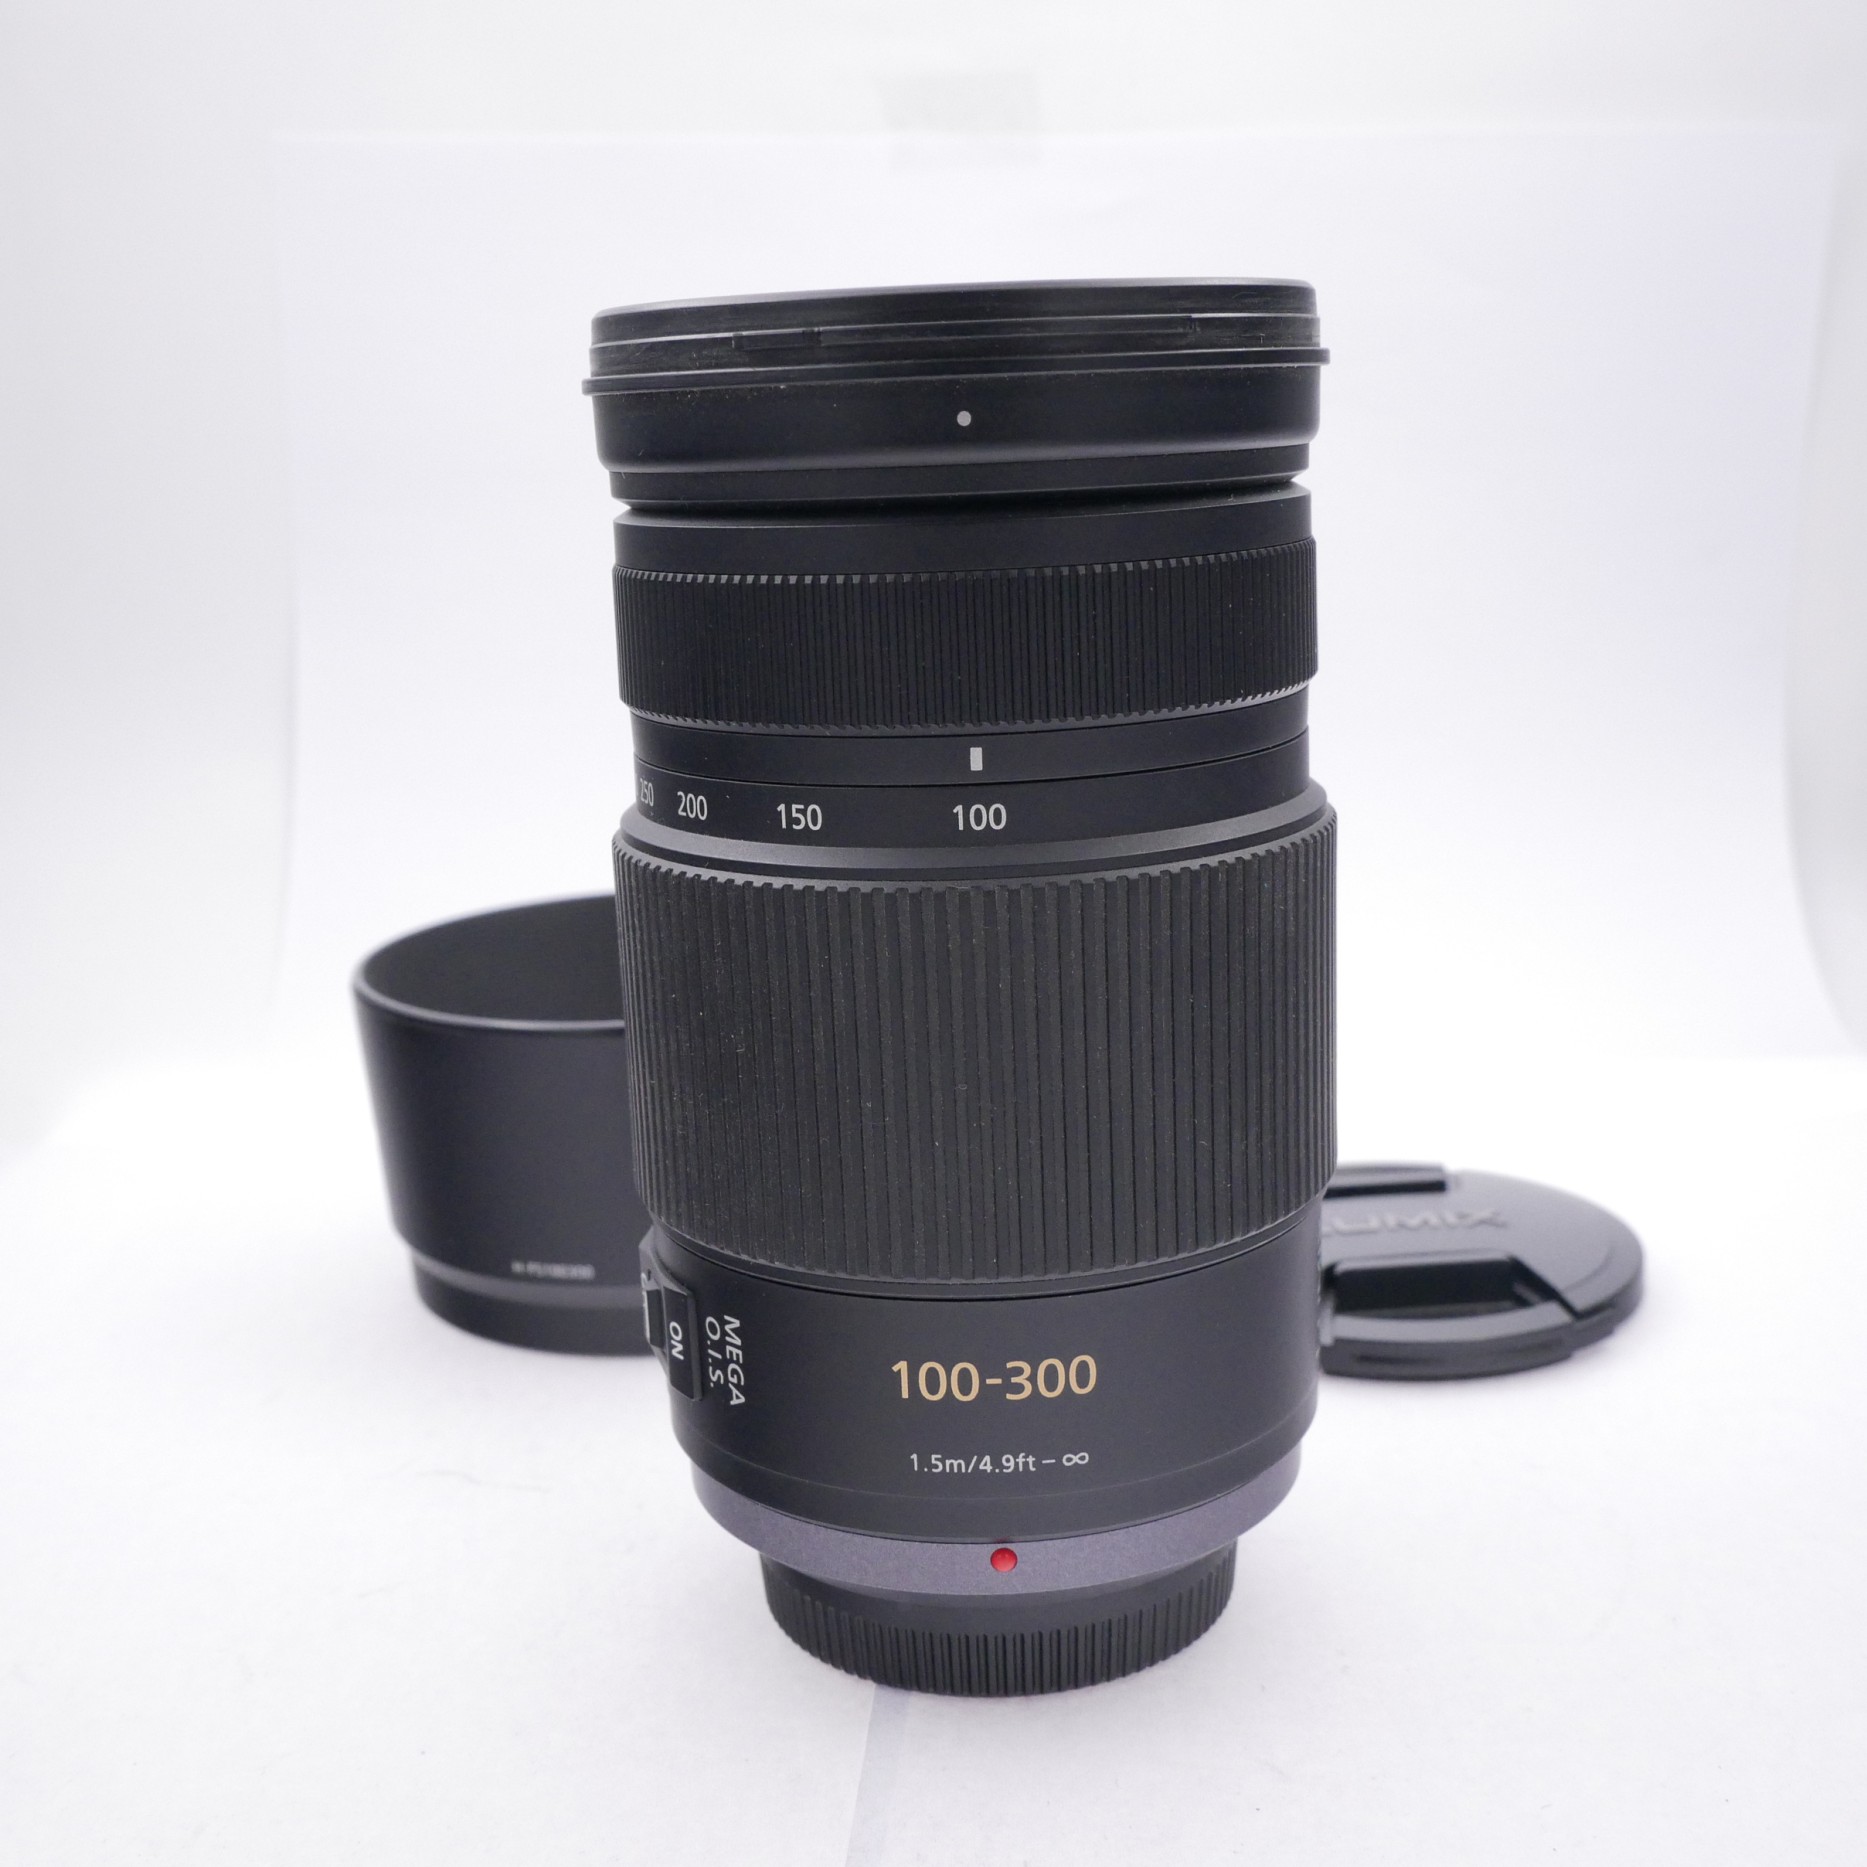 Panasonuc Lumix AF 100-300mm F4-5.6 G Vario OIS Lens